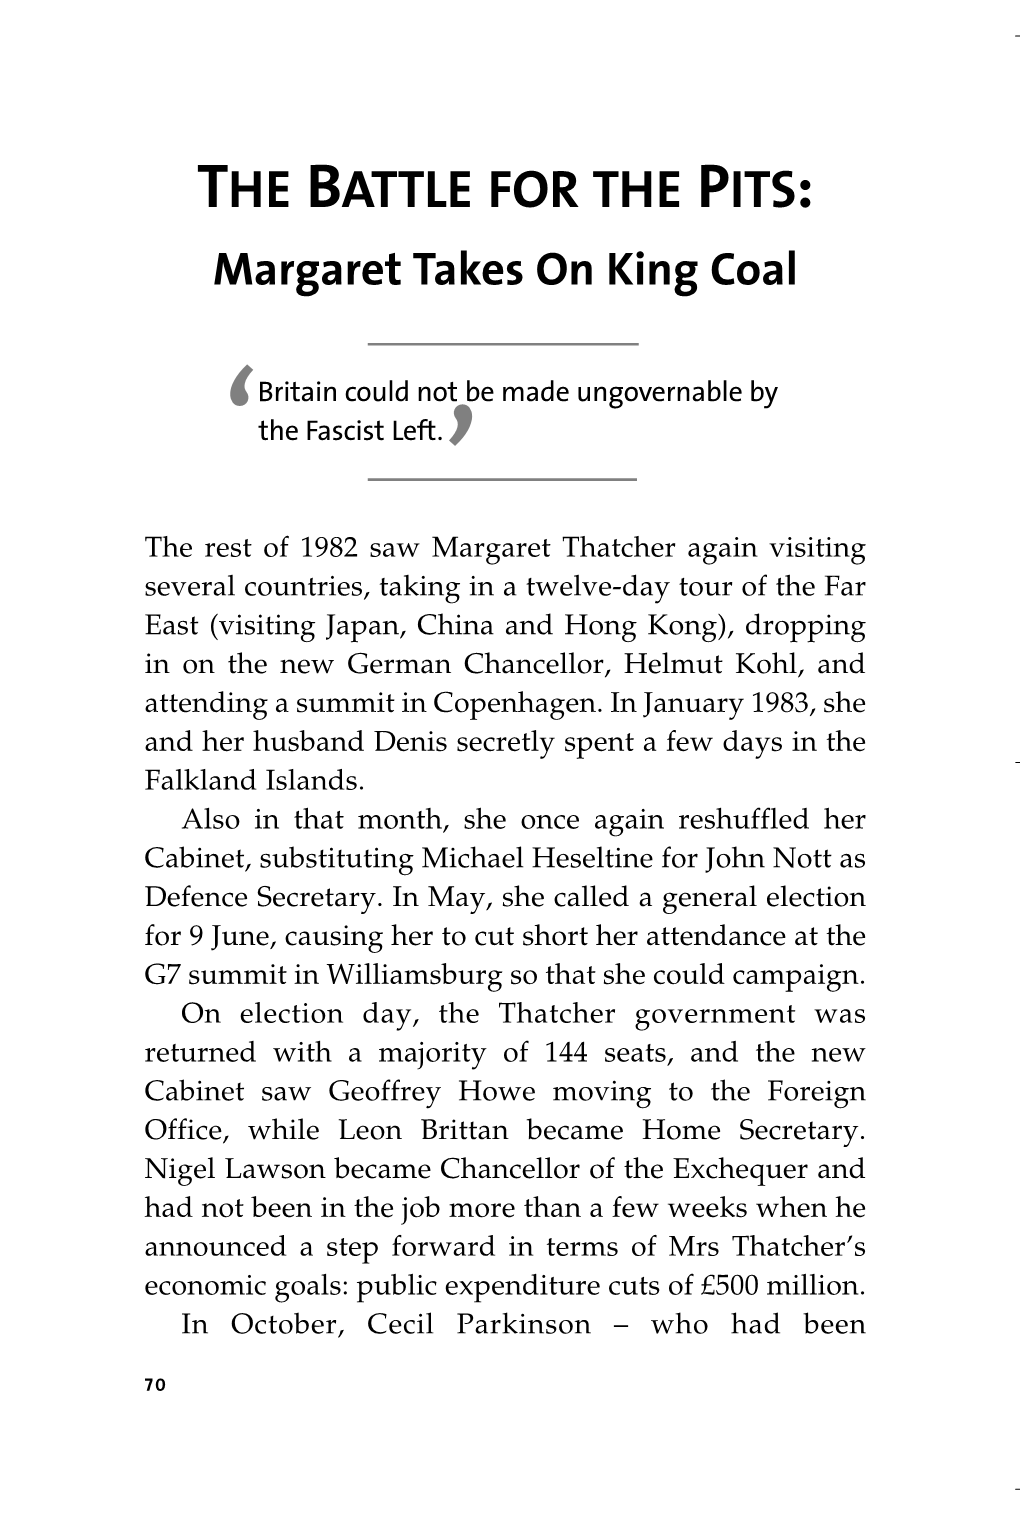 WAT Thatcher P1-162.Qxd 07/12/2011 15:45 Page 70